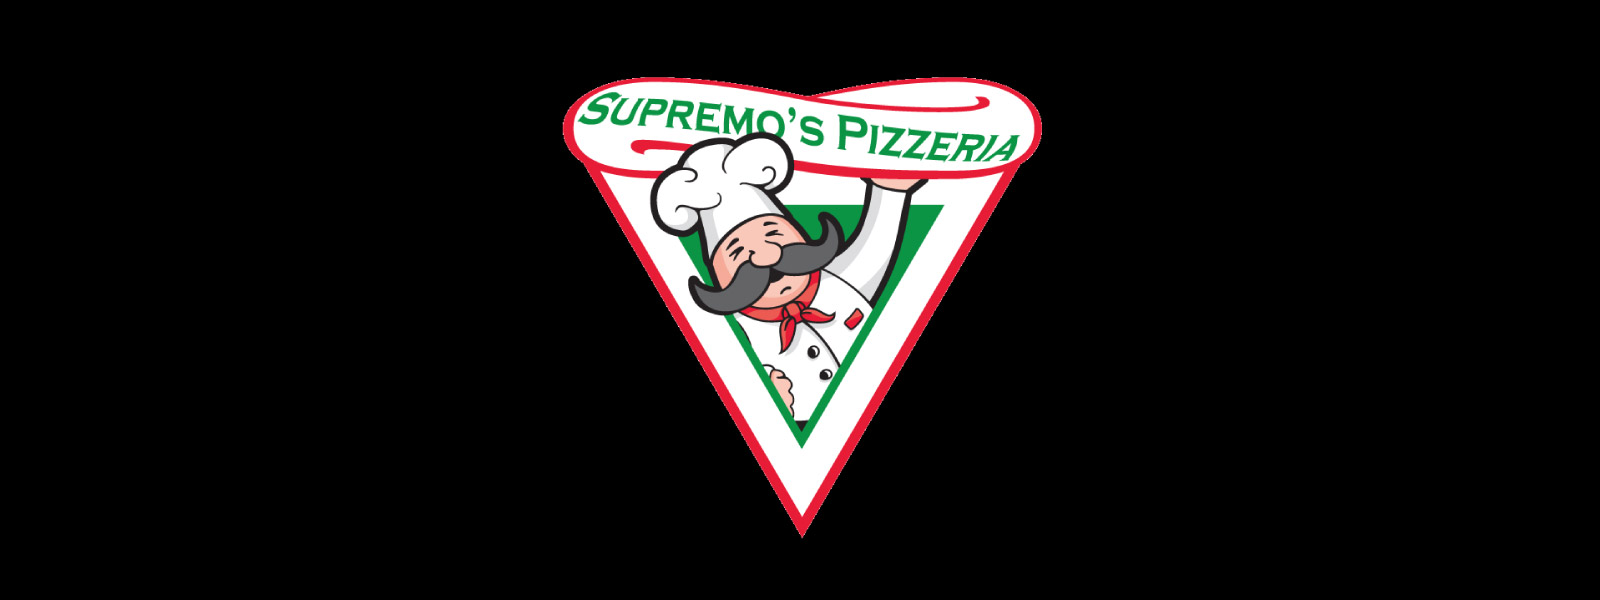 Supremos-Pizza-header